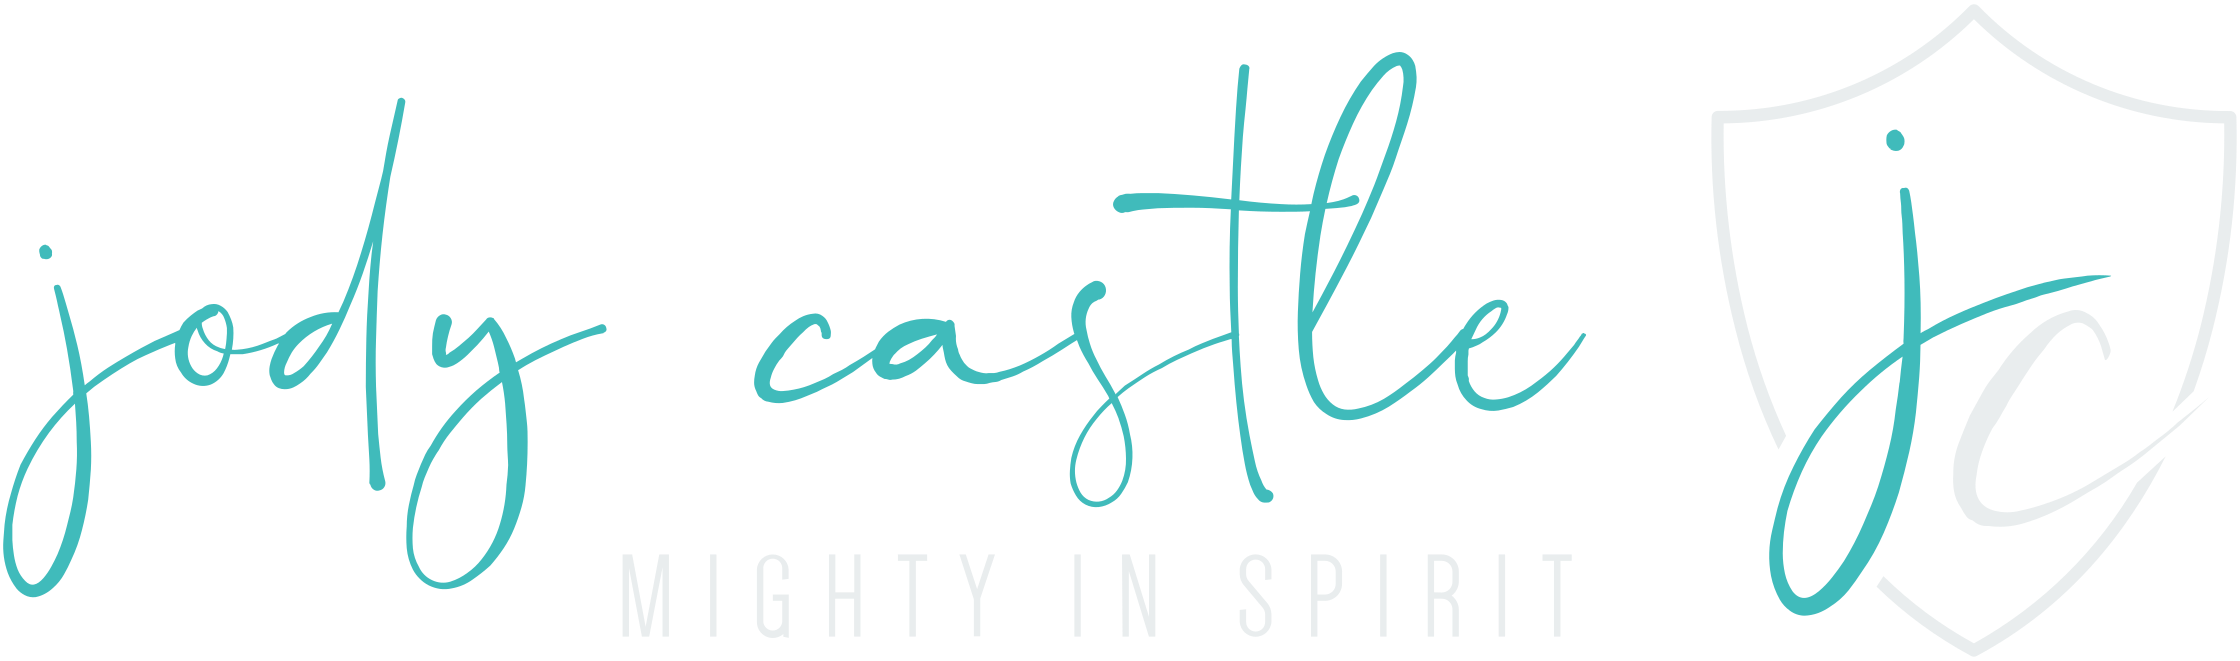 JodyCastle Logo